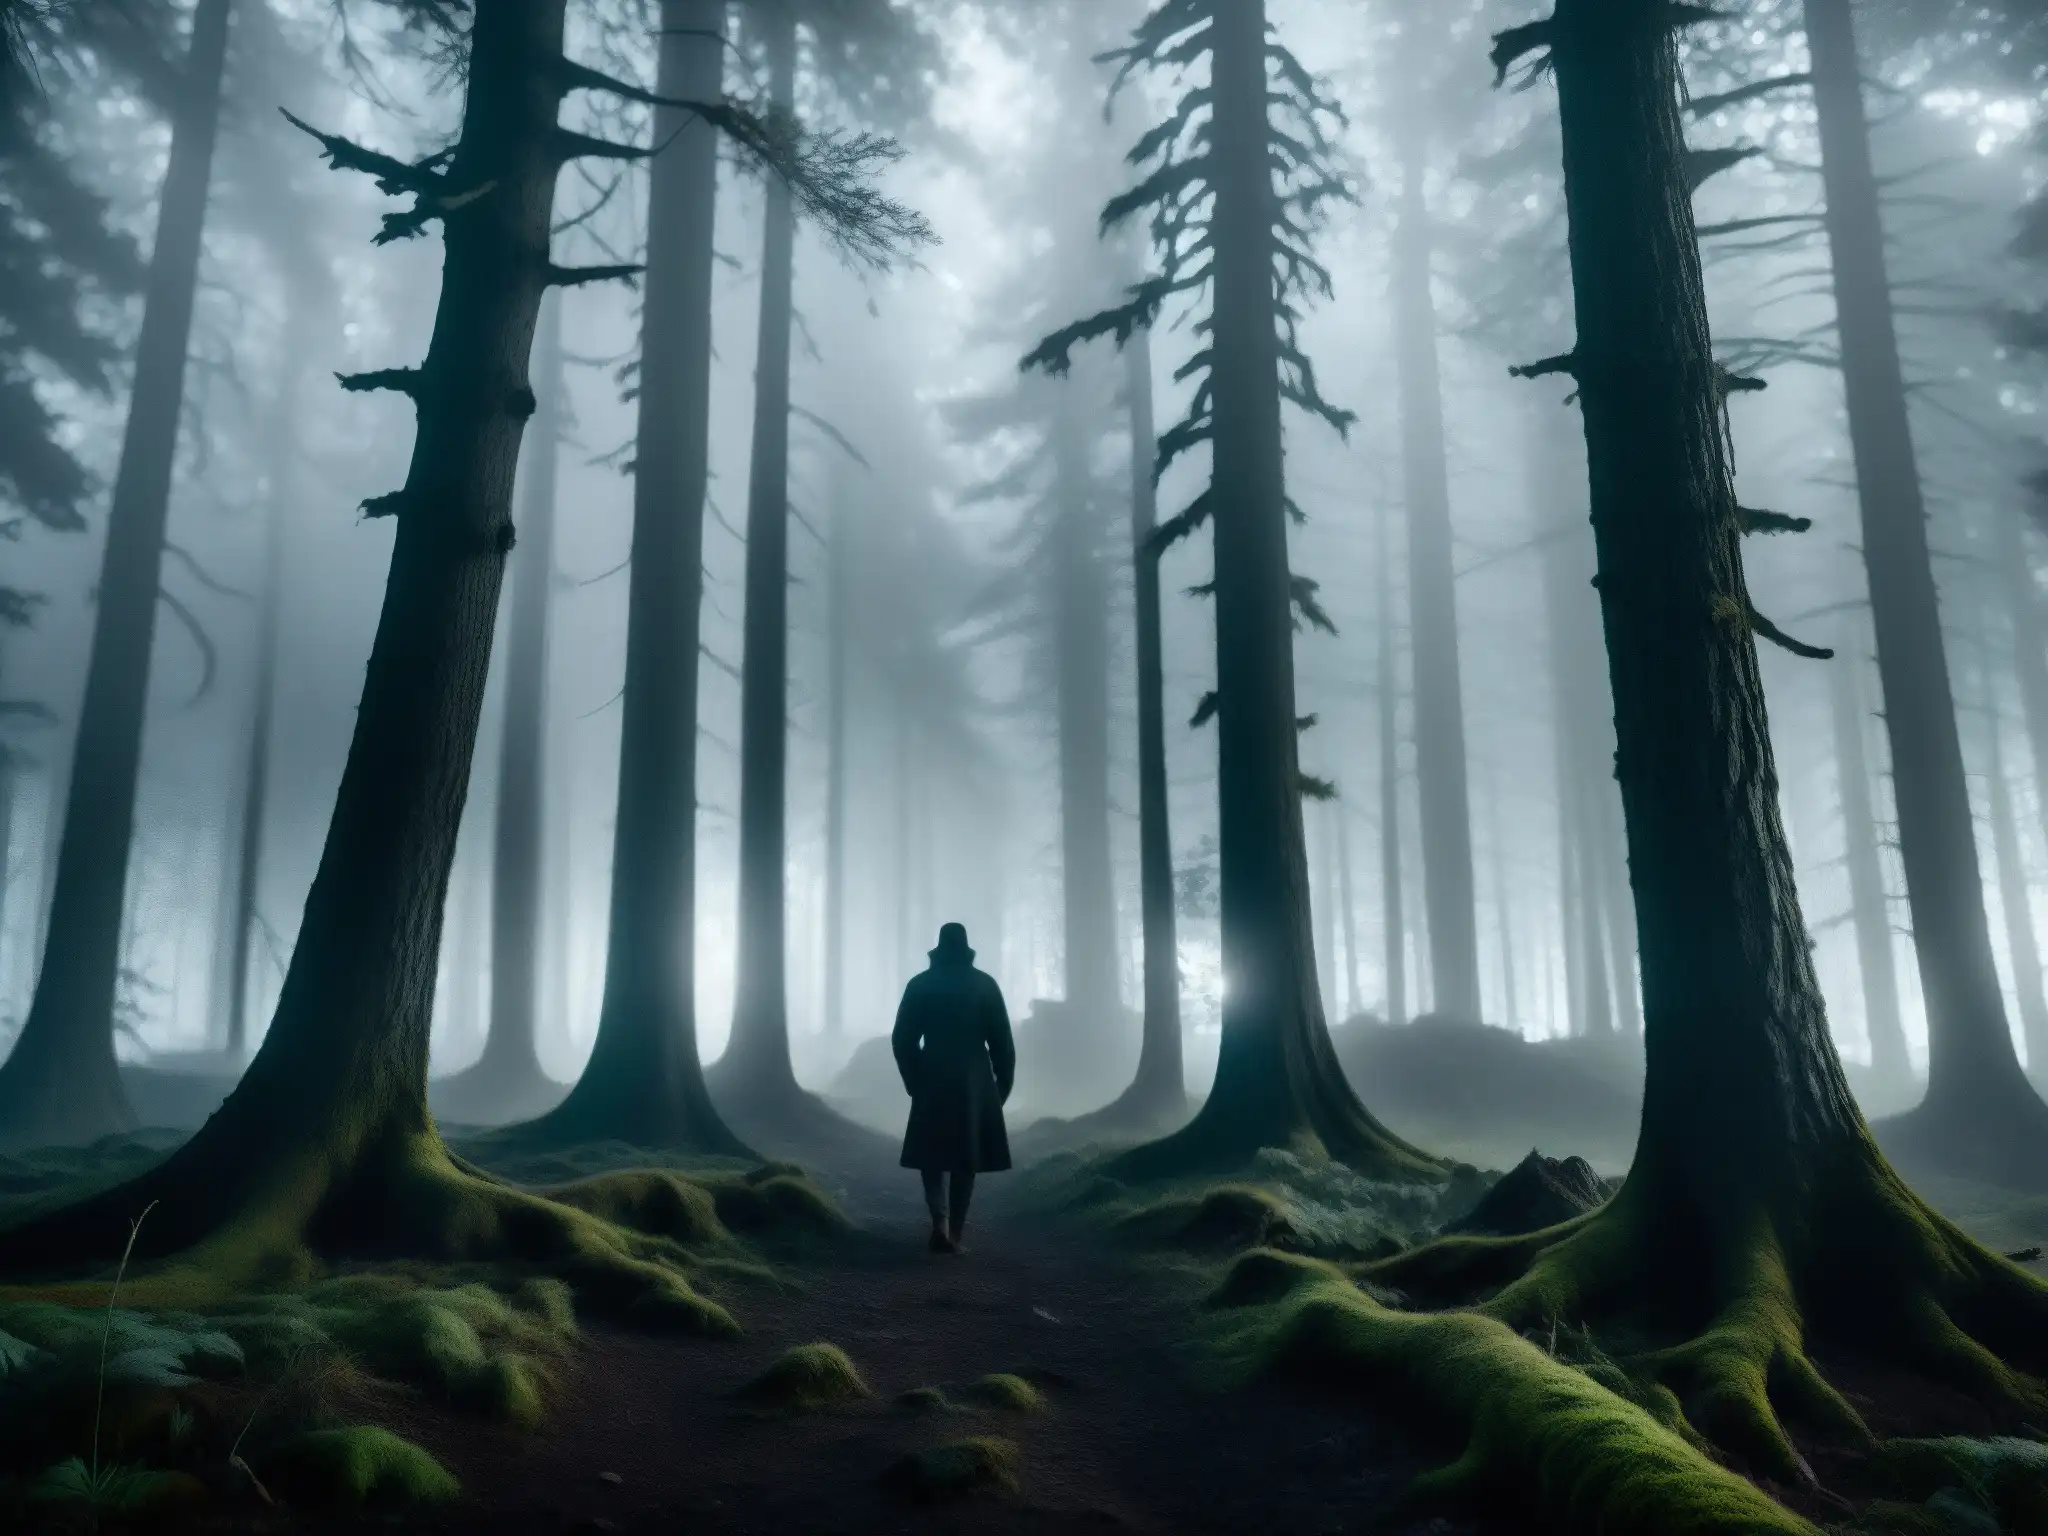 Imagen 8K detallada de un bosque oscuro y misterioso de noche, con neblina alrededor de los árboles retorcidos